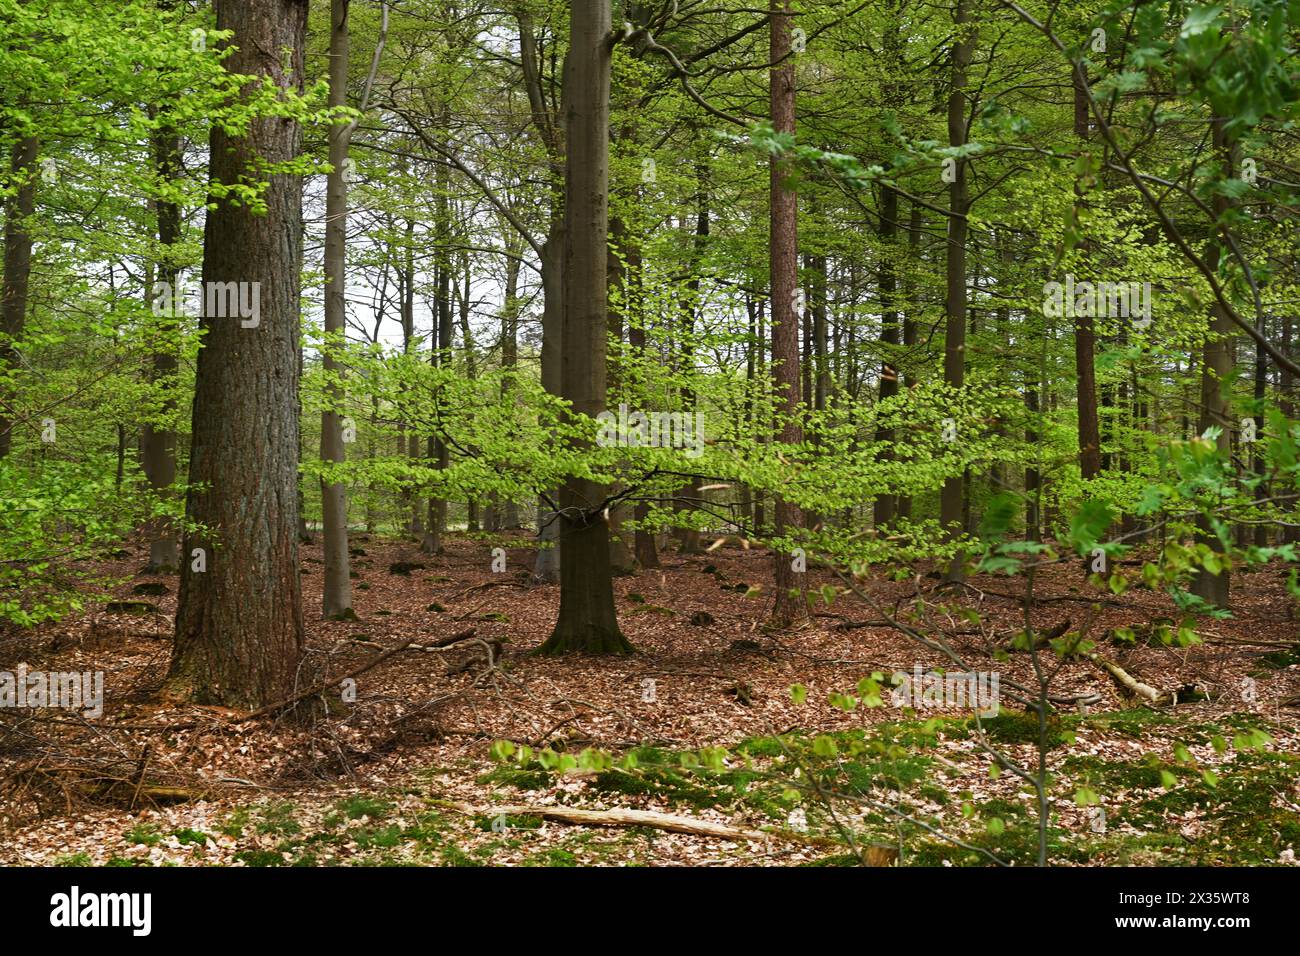 NL, Eesergroen: Der Frühling prägt die Landschaft, die Städte und die Menschen in der Provinz Drenthe in den Niederlanden. Mai grün im April, Wald in Dren Stockfoto